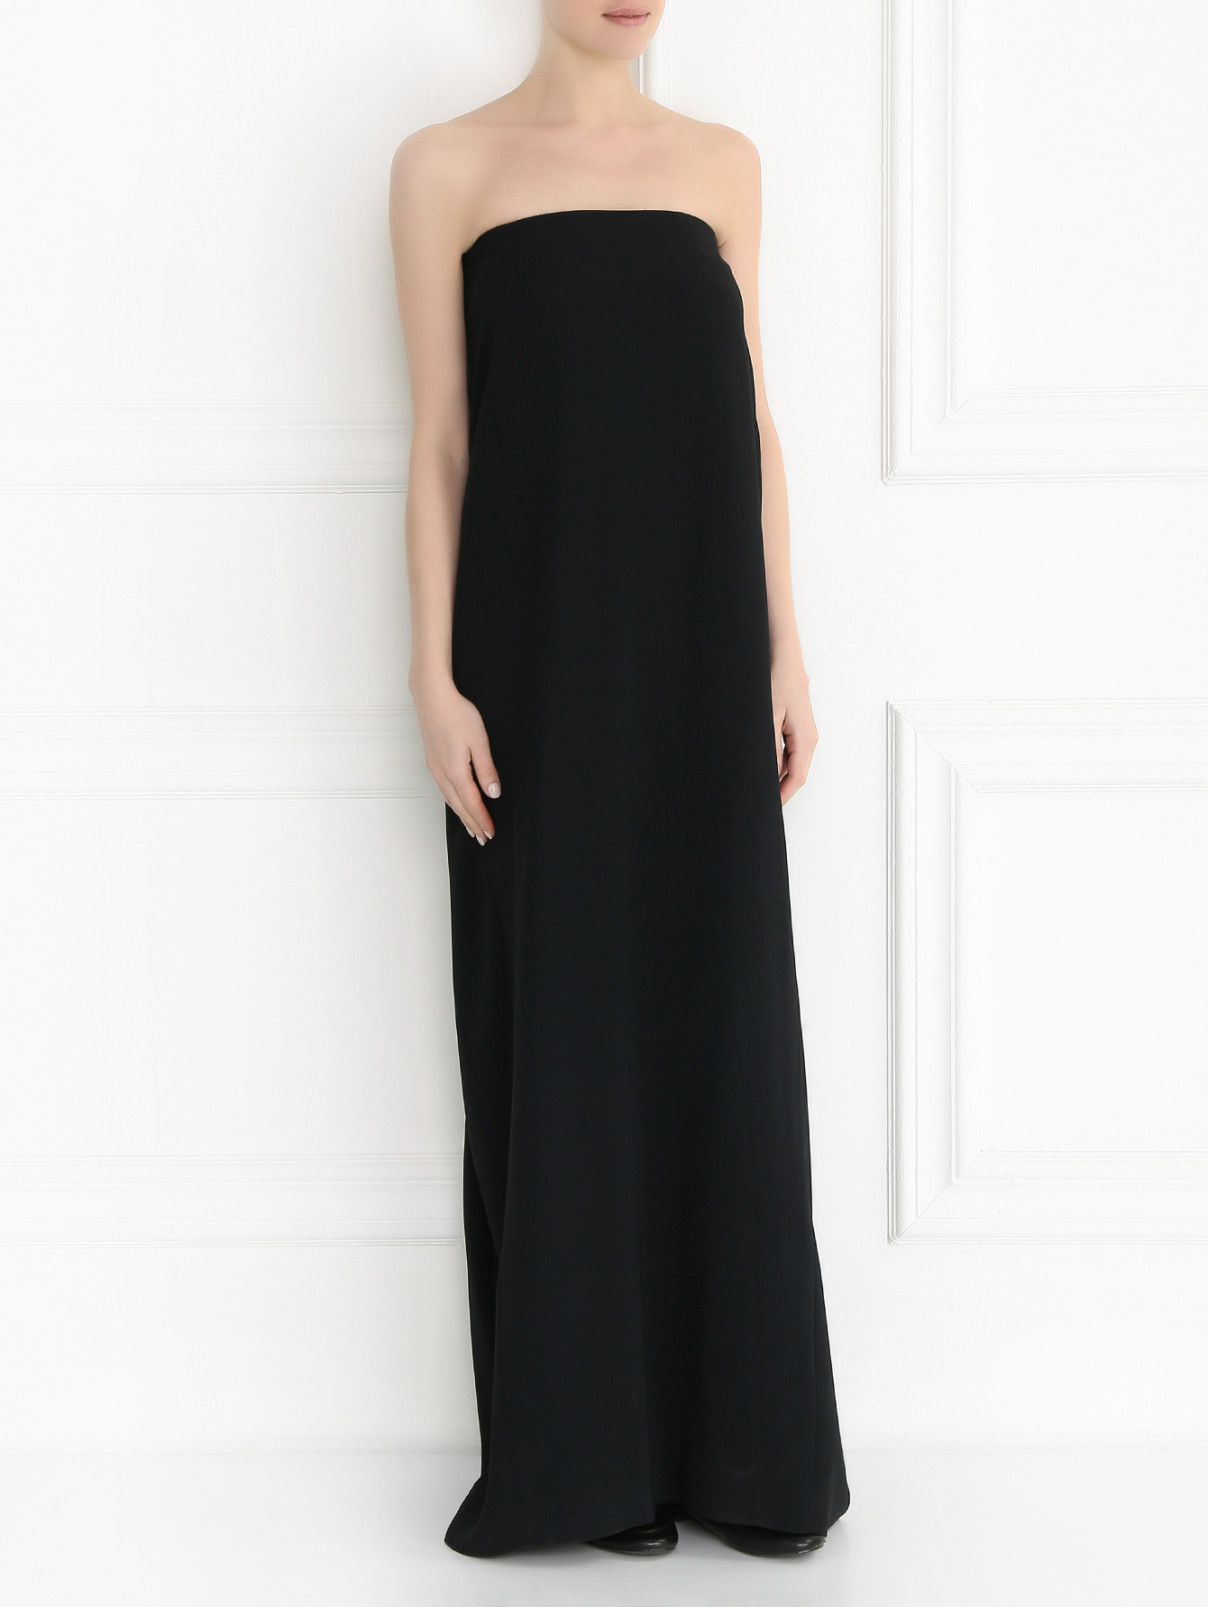 Базовая юбка-макси Antonio Berardi  –  Модель Общий вид  – Цвет:  Черный